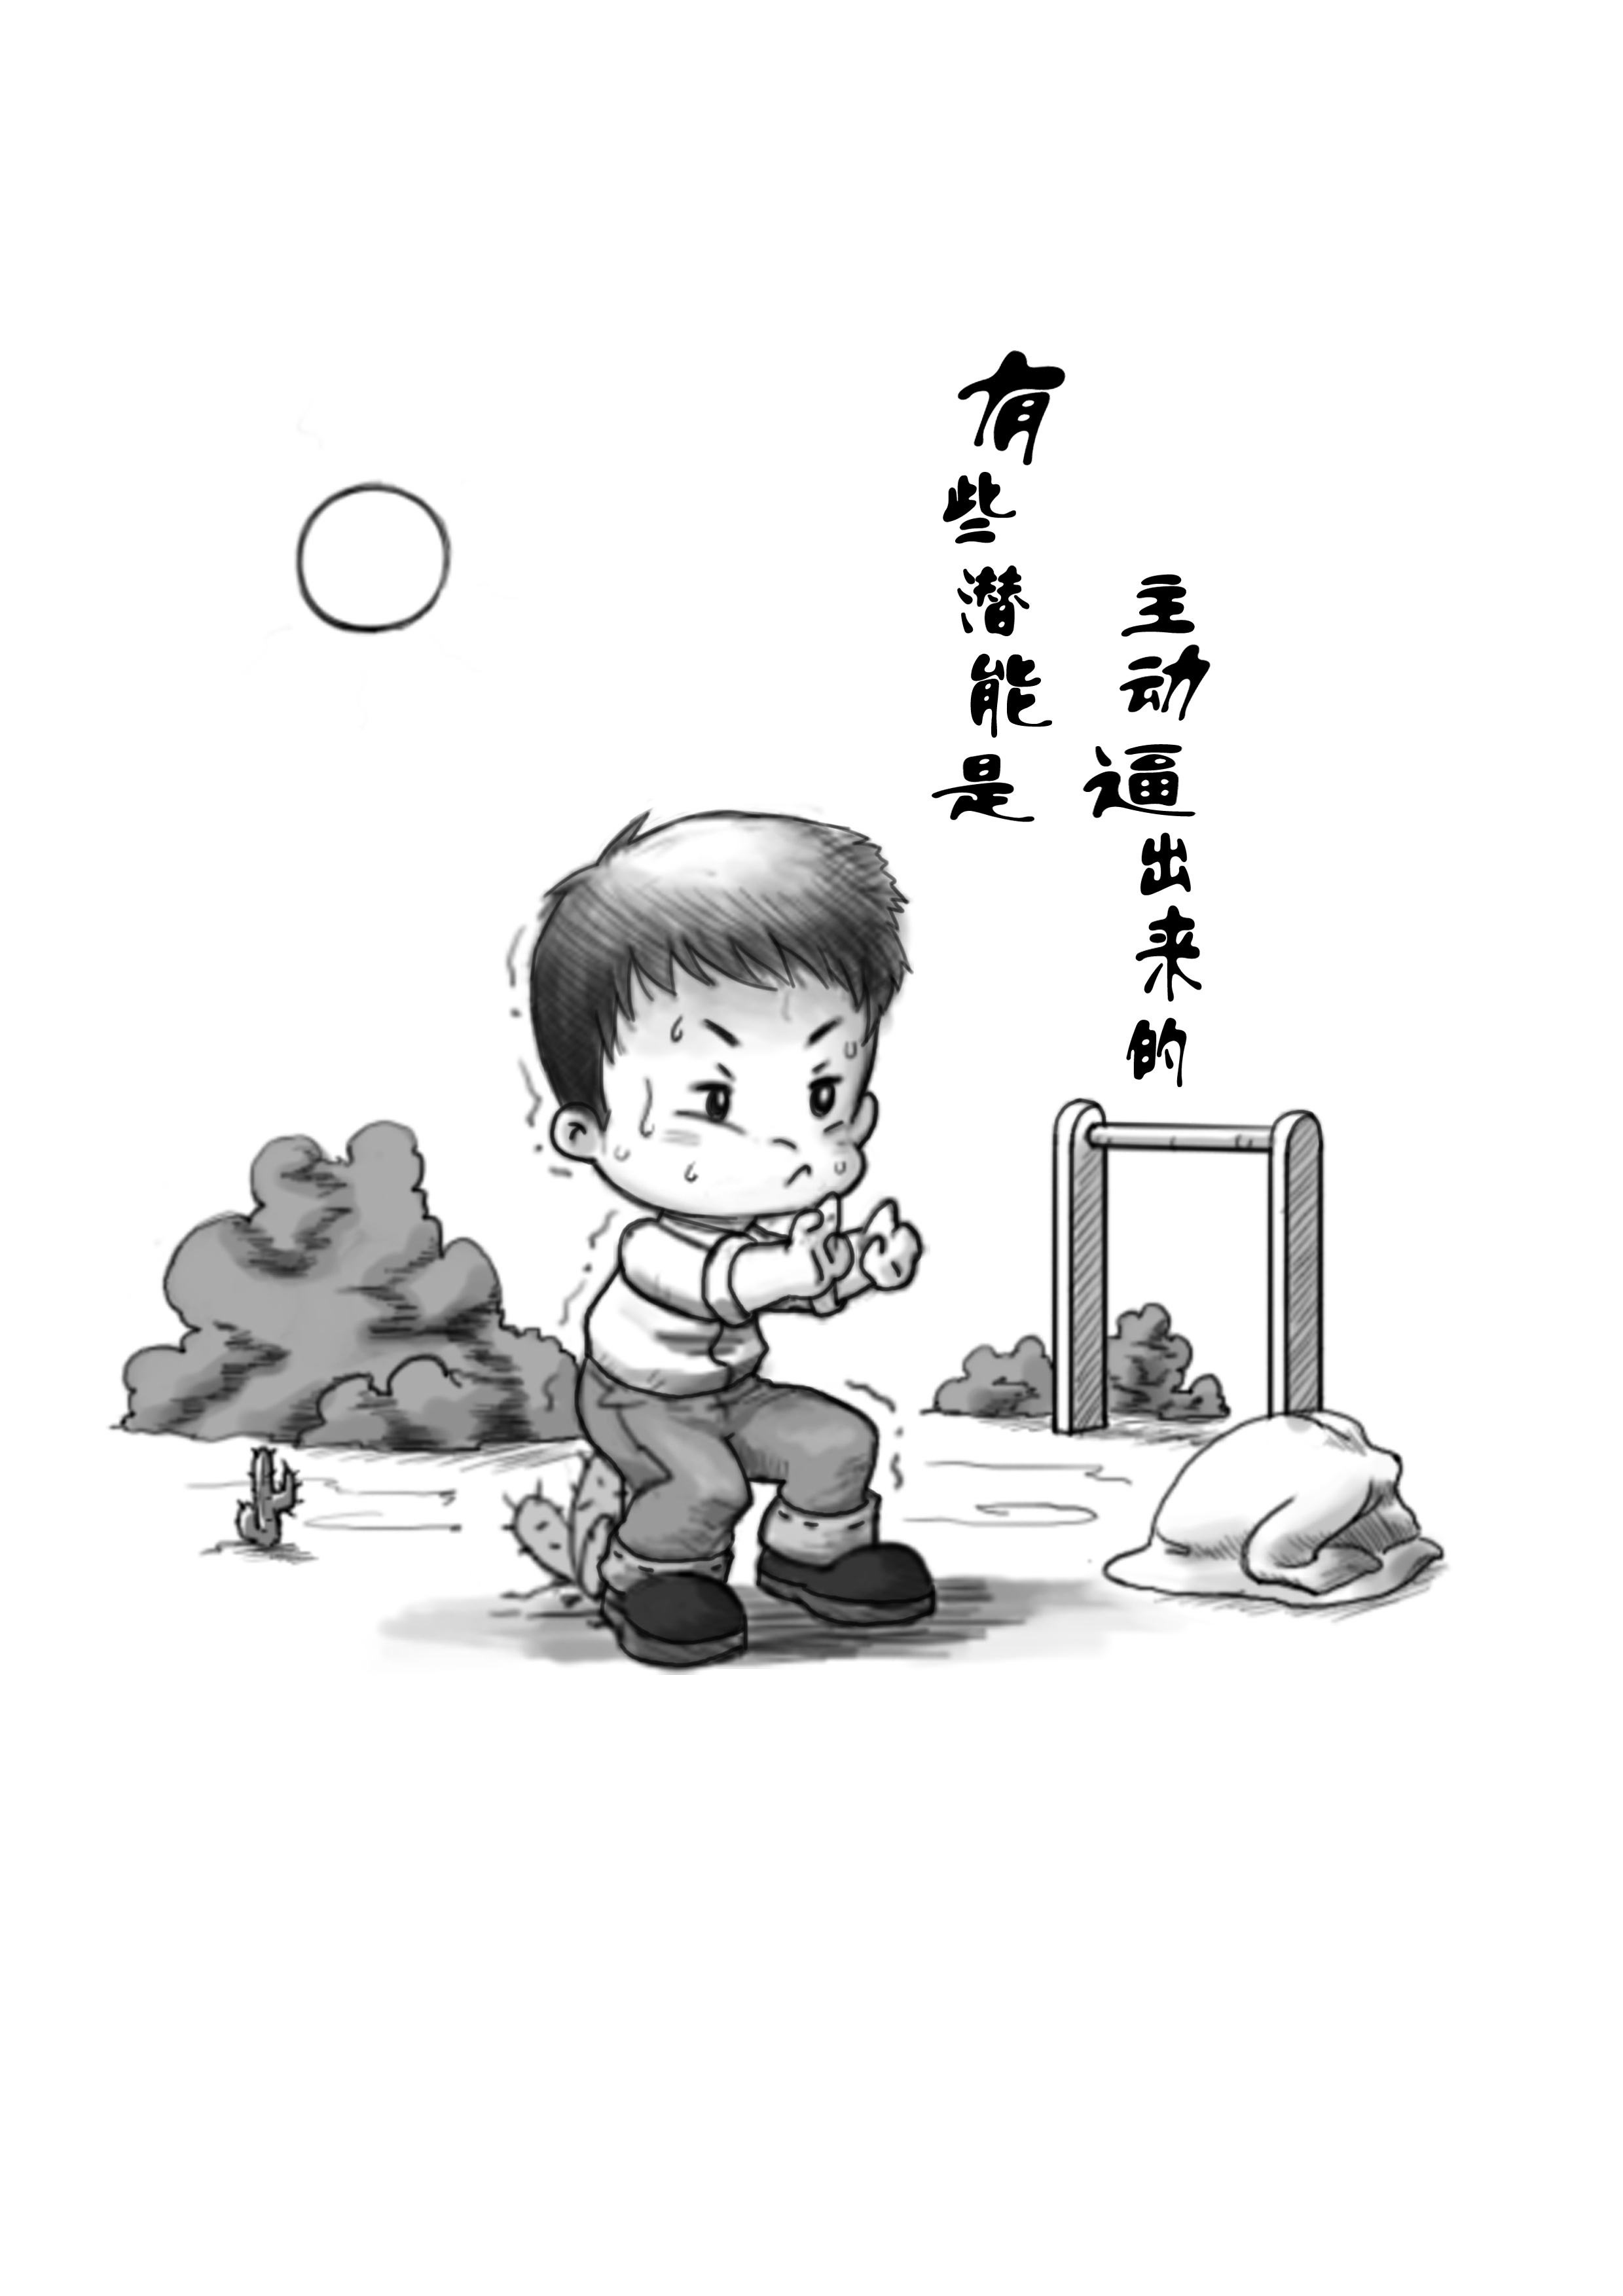 漫画《迦希女王不会放弃》确定动画化 缩水成萝莉的魔王努力生活的喜剧_中国卡通网